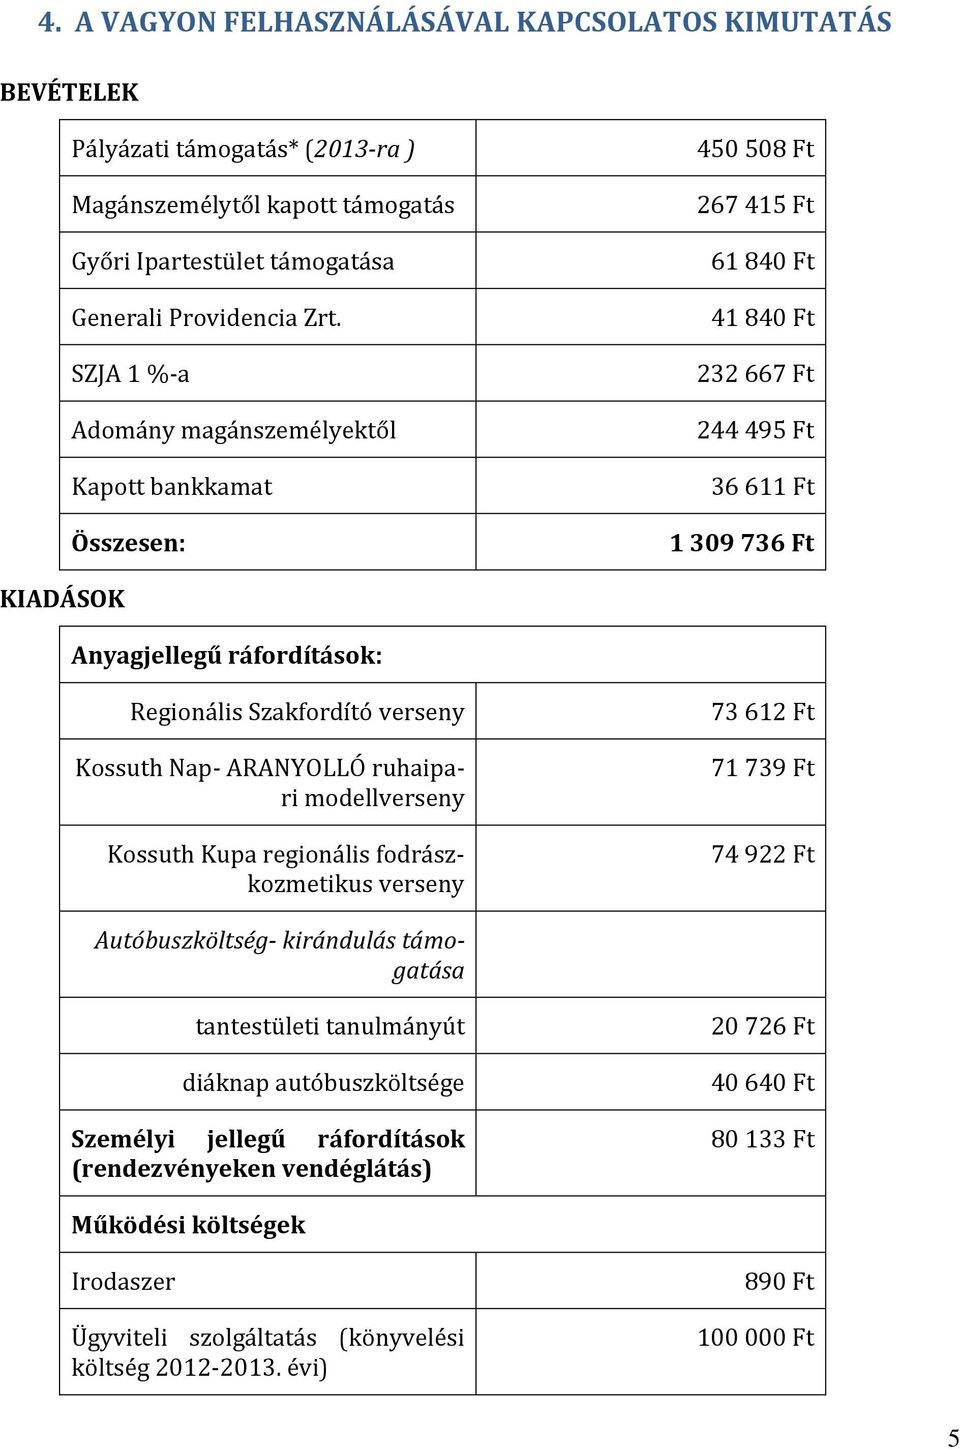 Szakfordító verseny Kossuth Nap- ARANYOLLÓ ruhaipari modellverseny Kossuth Kupa regionális fodrászkozmetikus verseny 73 612 Ft 71 739 Ft 74 922 Ft Autóbuszköltség- kirándulás támogatása tantestületi